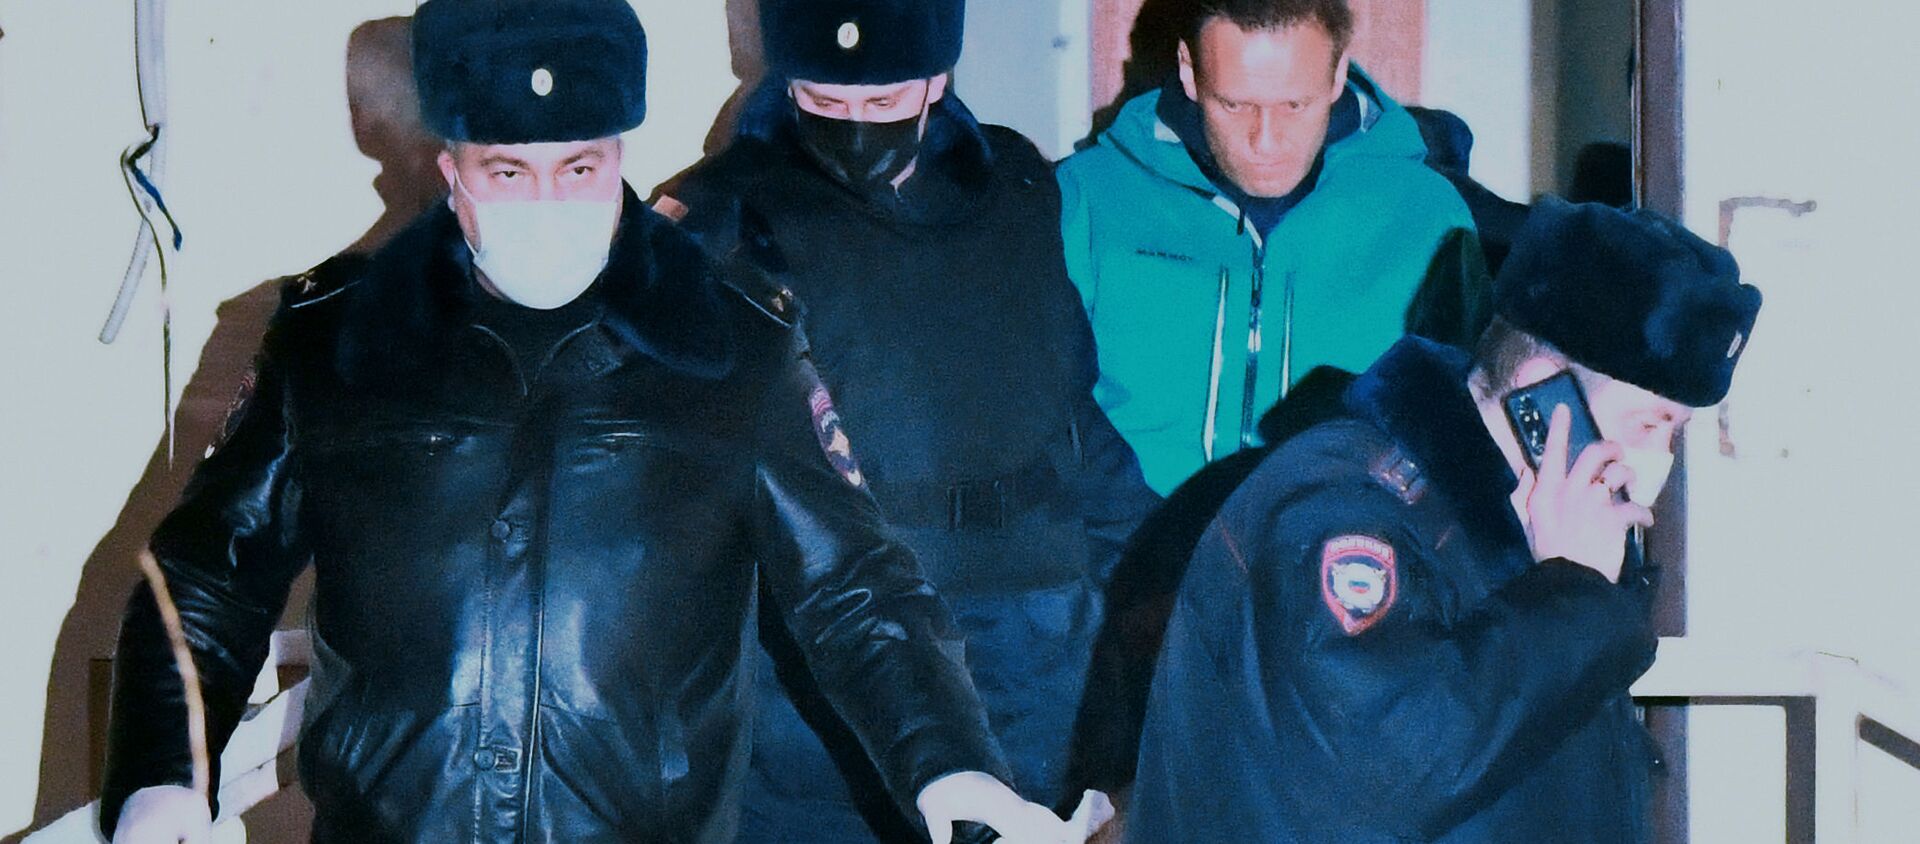 Отдел полиции, где находится задержанный А. Навальный - Sputnik Узбекистан, 1920, 22.01.2021